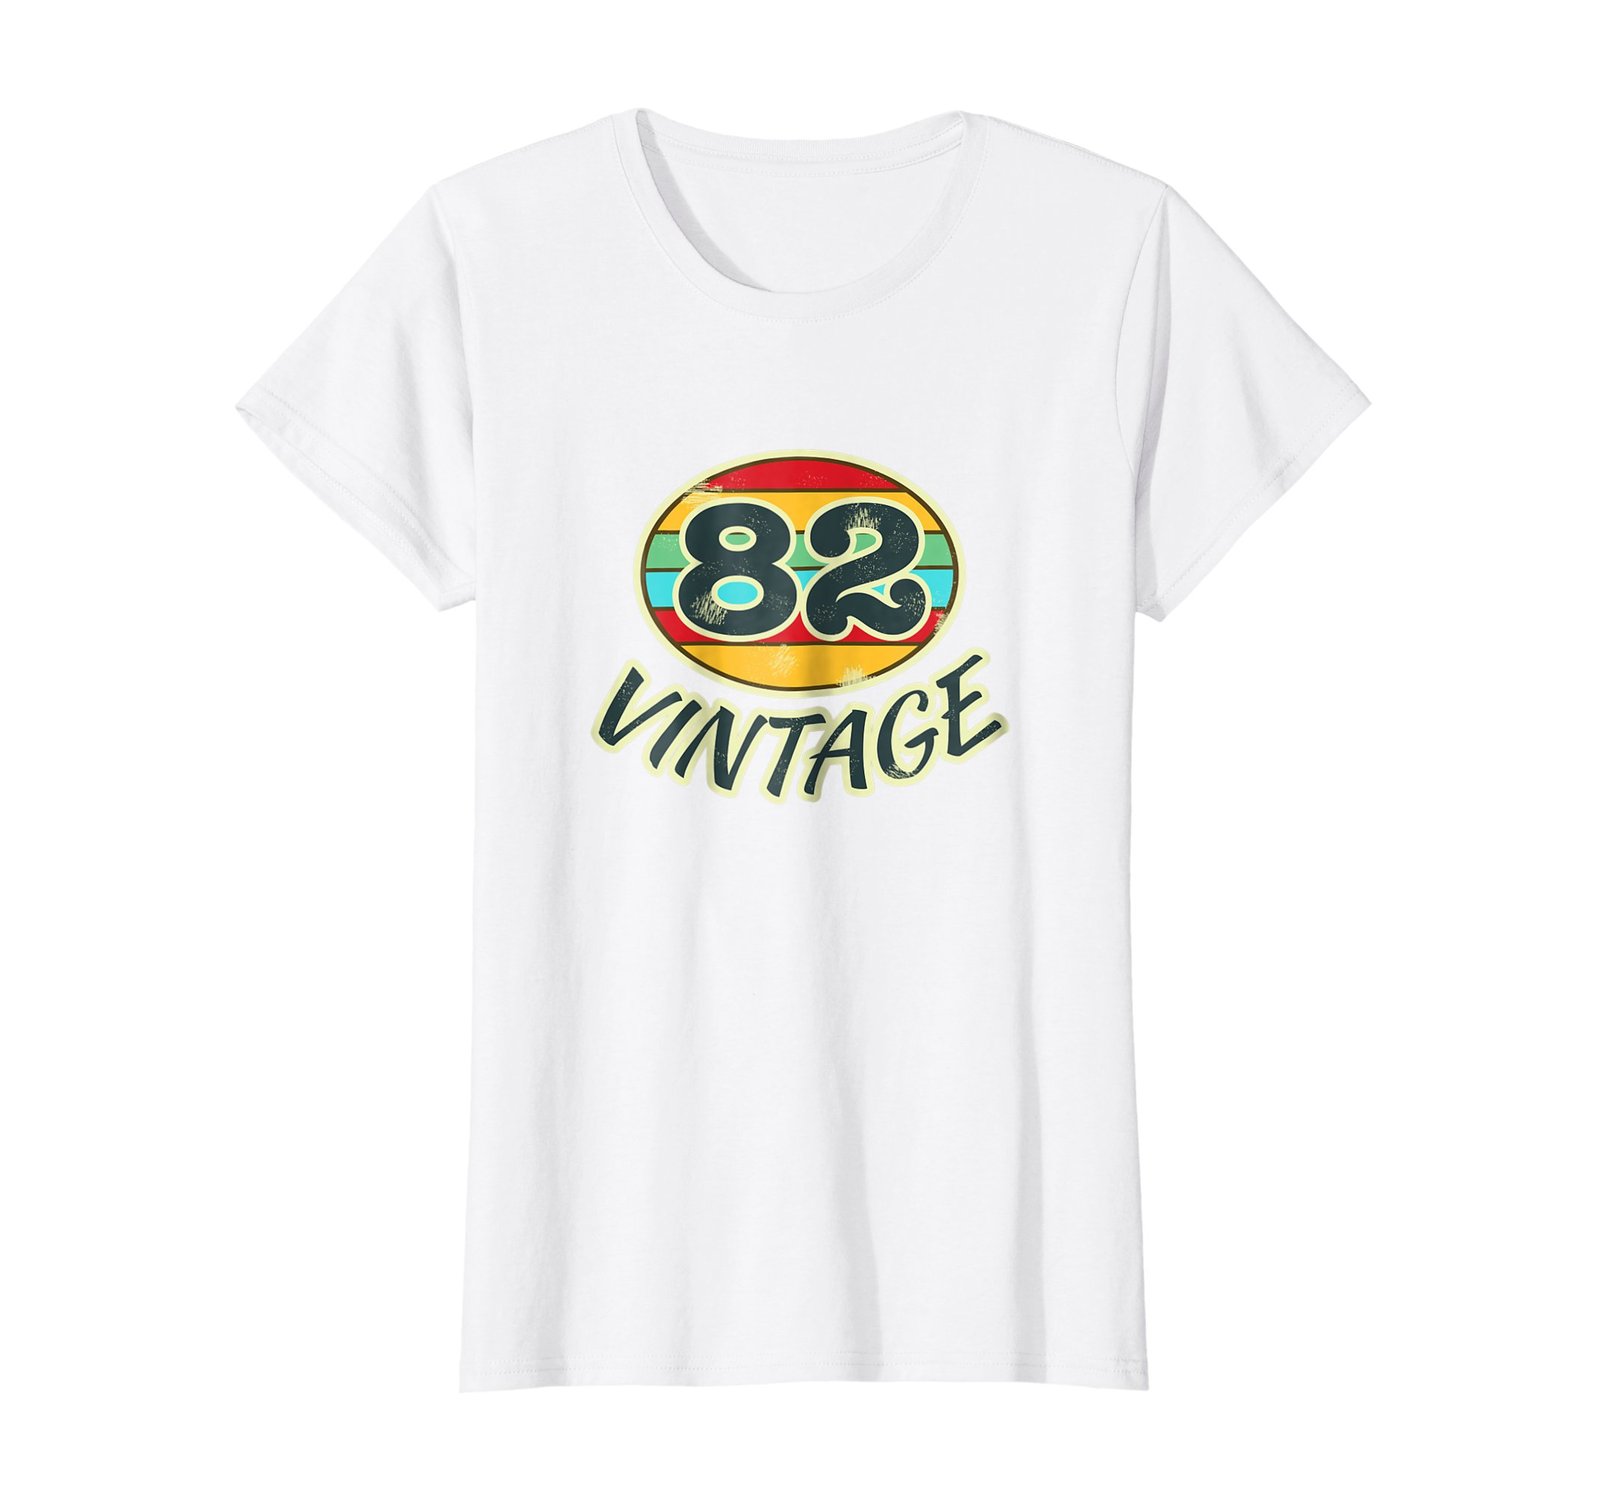 Funny Shirts - DOB 1982 TShirt Vintage Retro 82 Birth Year Tee Shirt Wowen